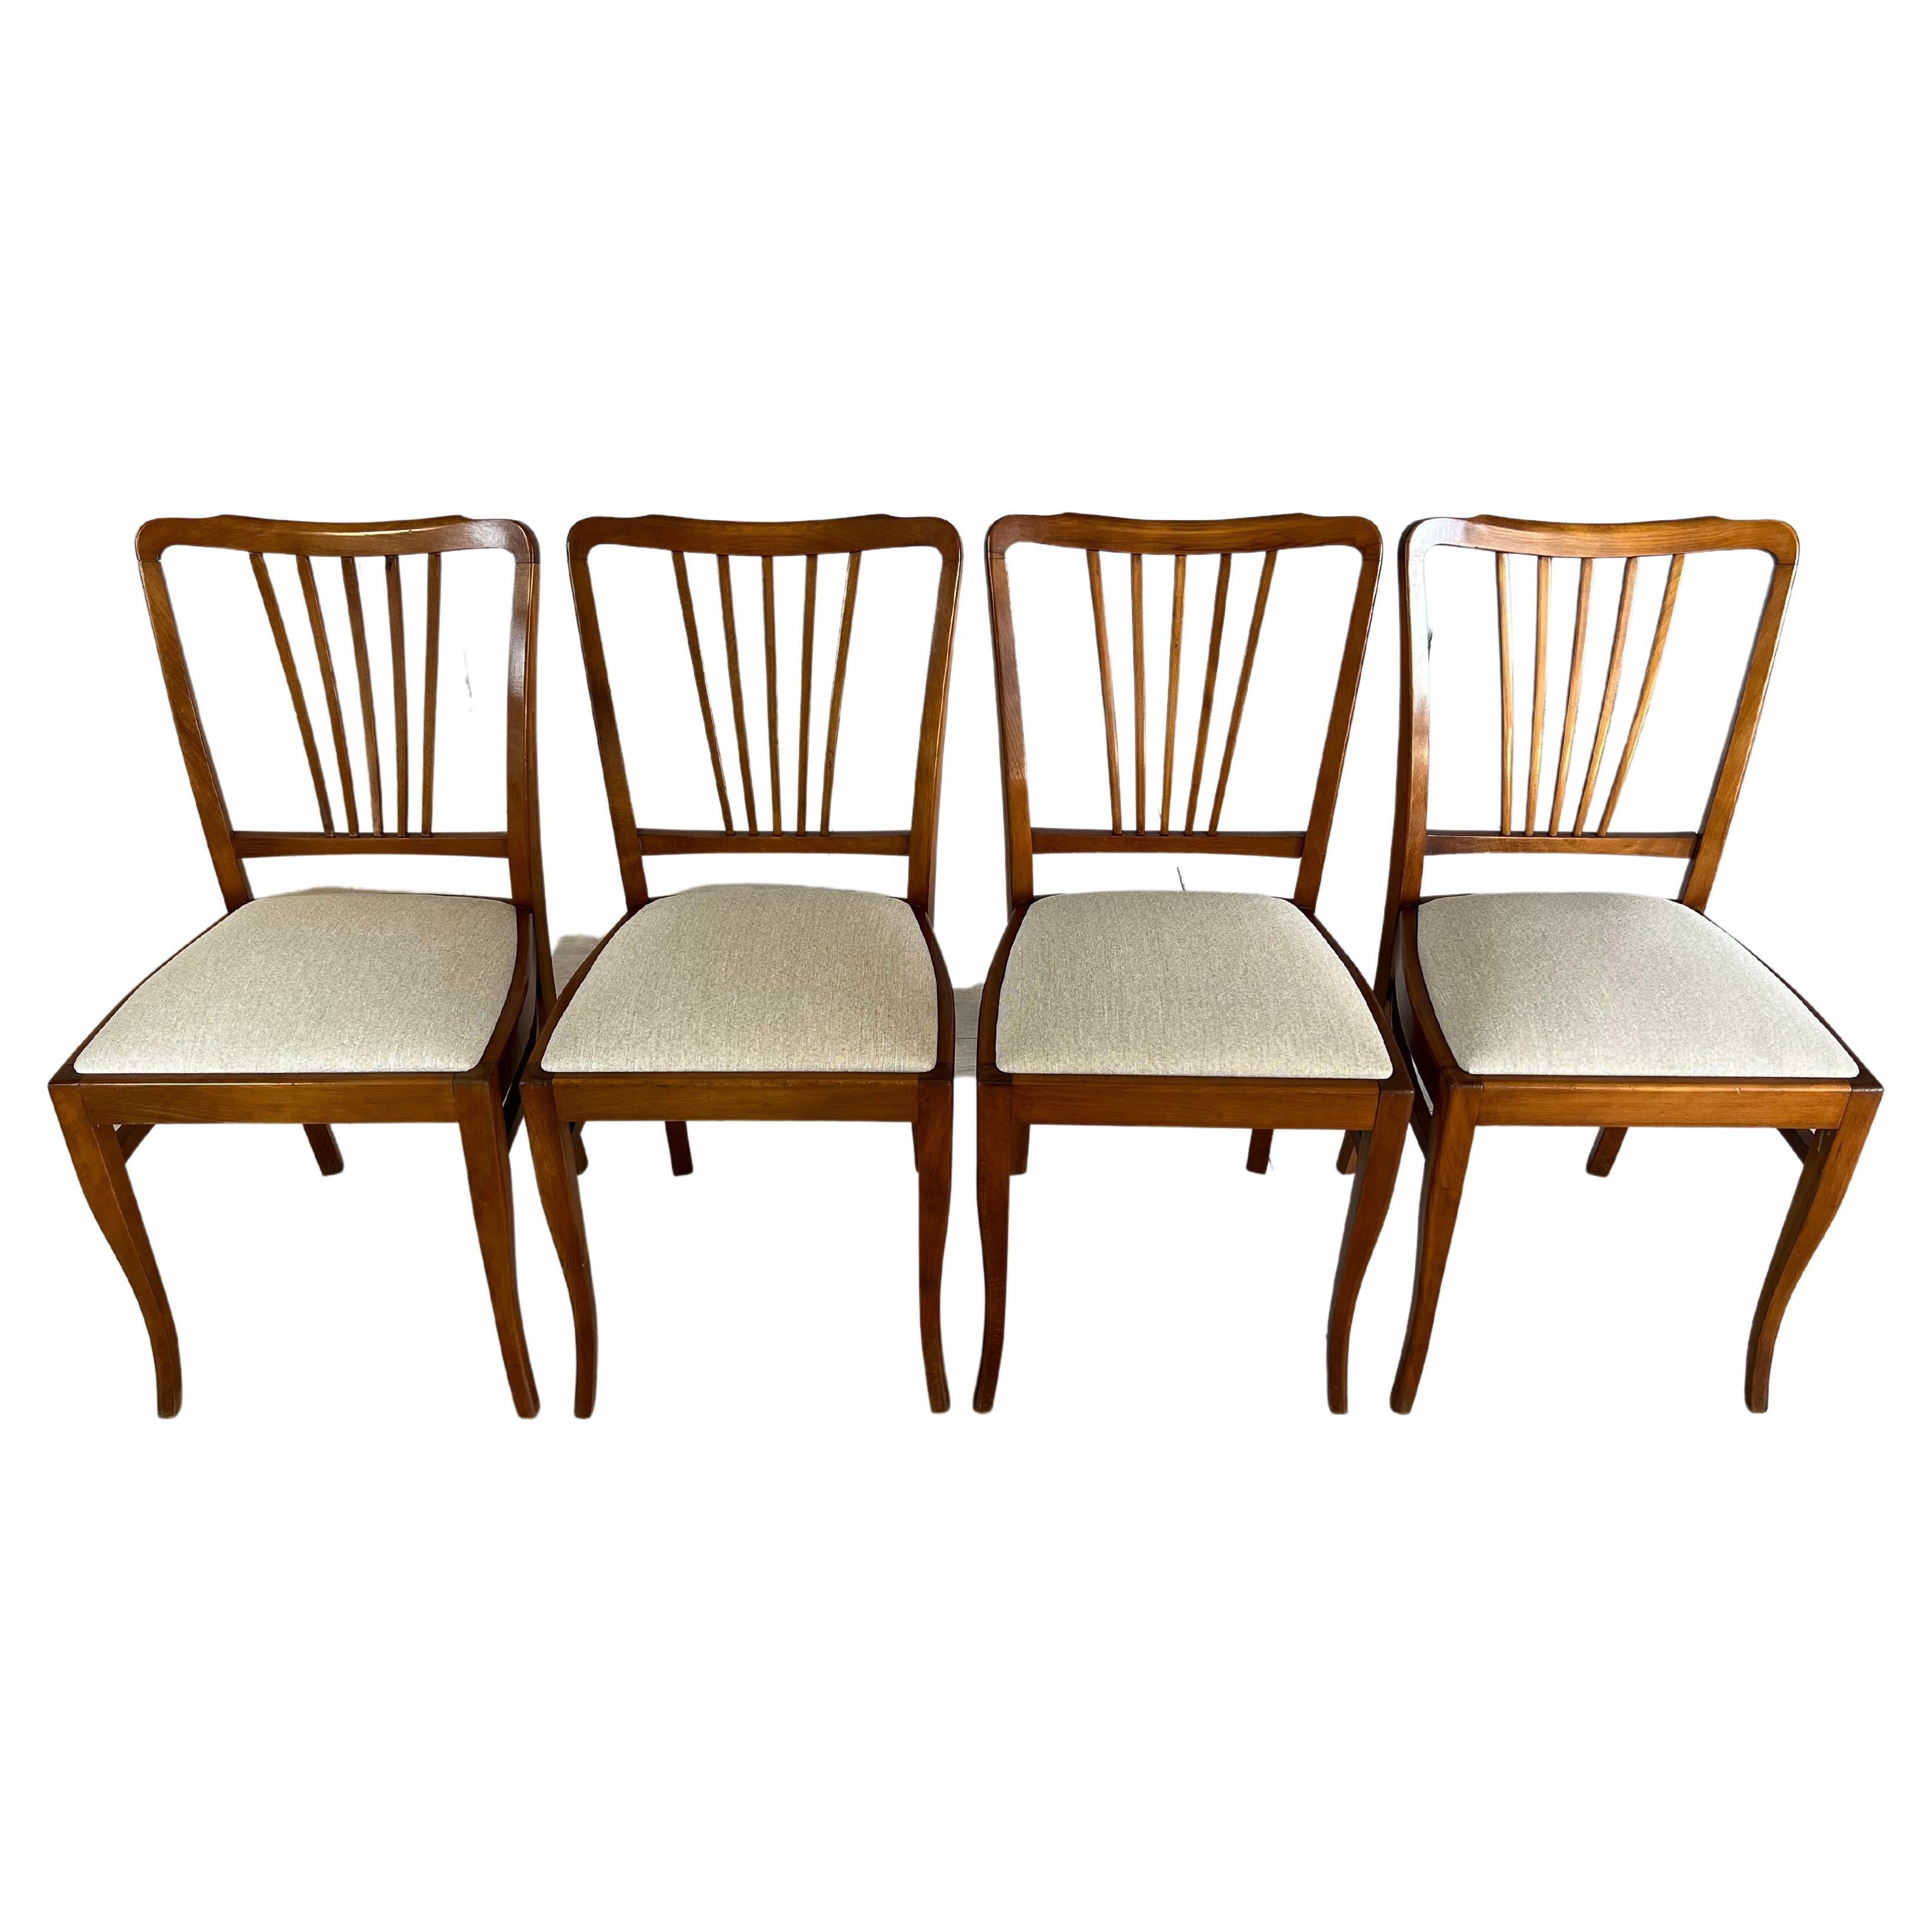 Französische Esszimmerstühle mit Splat-Rückenlehne im Landhausstil, neu gepolstert, 4er-Set